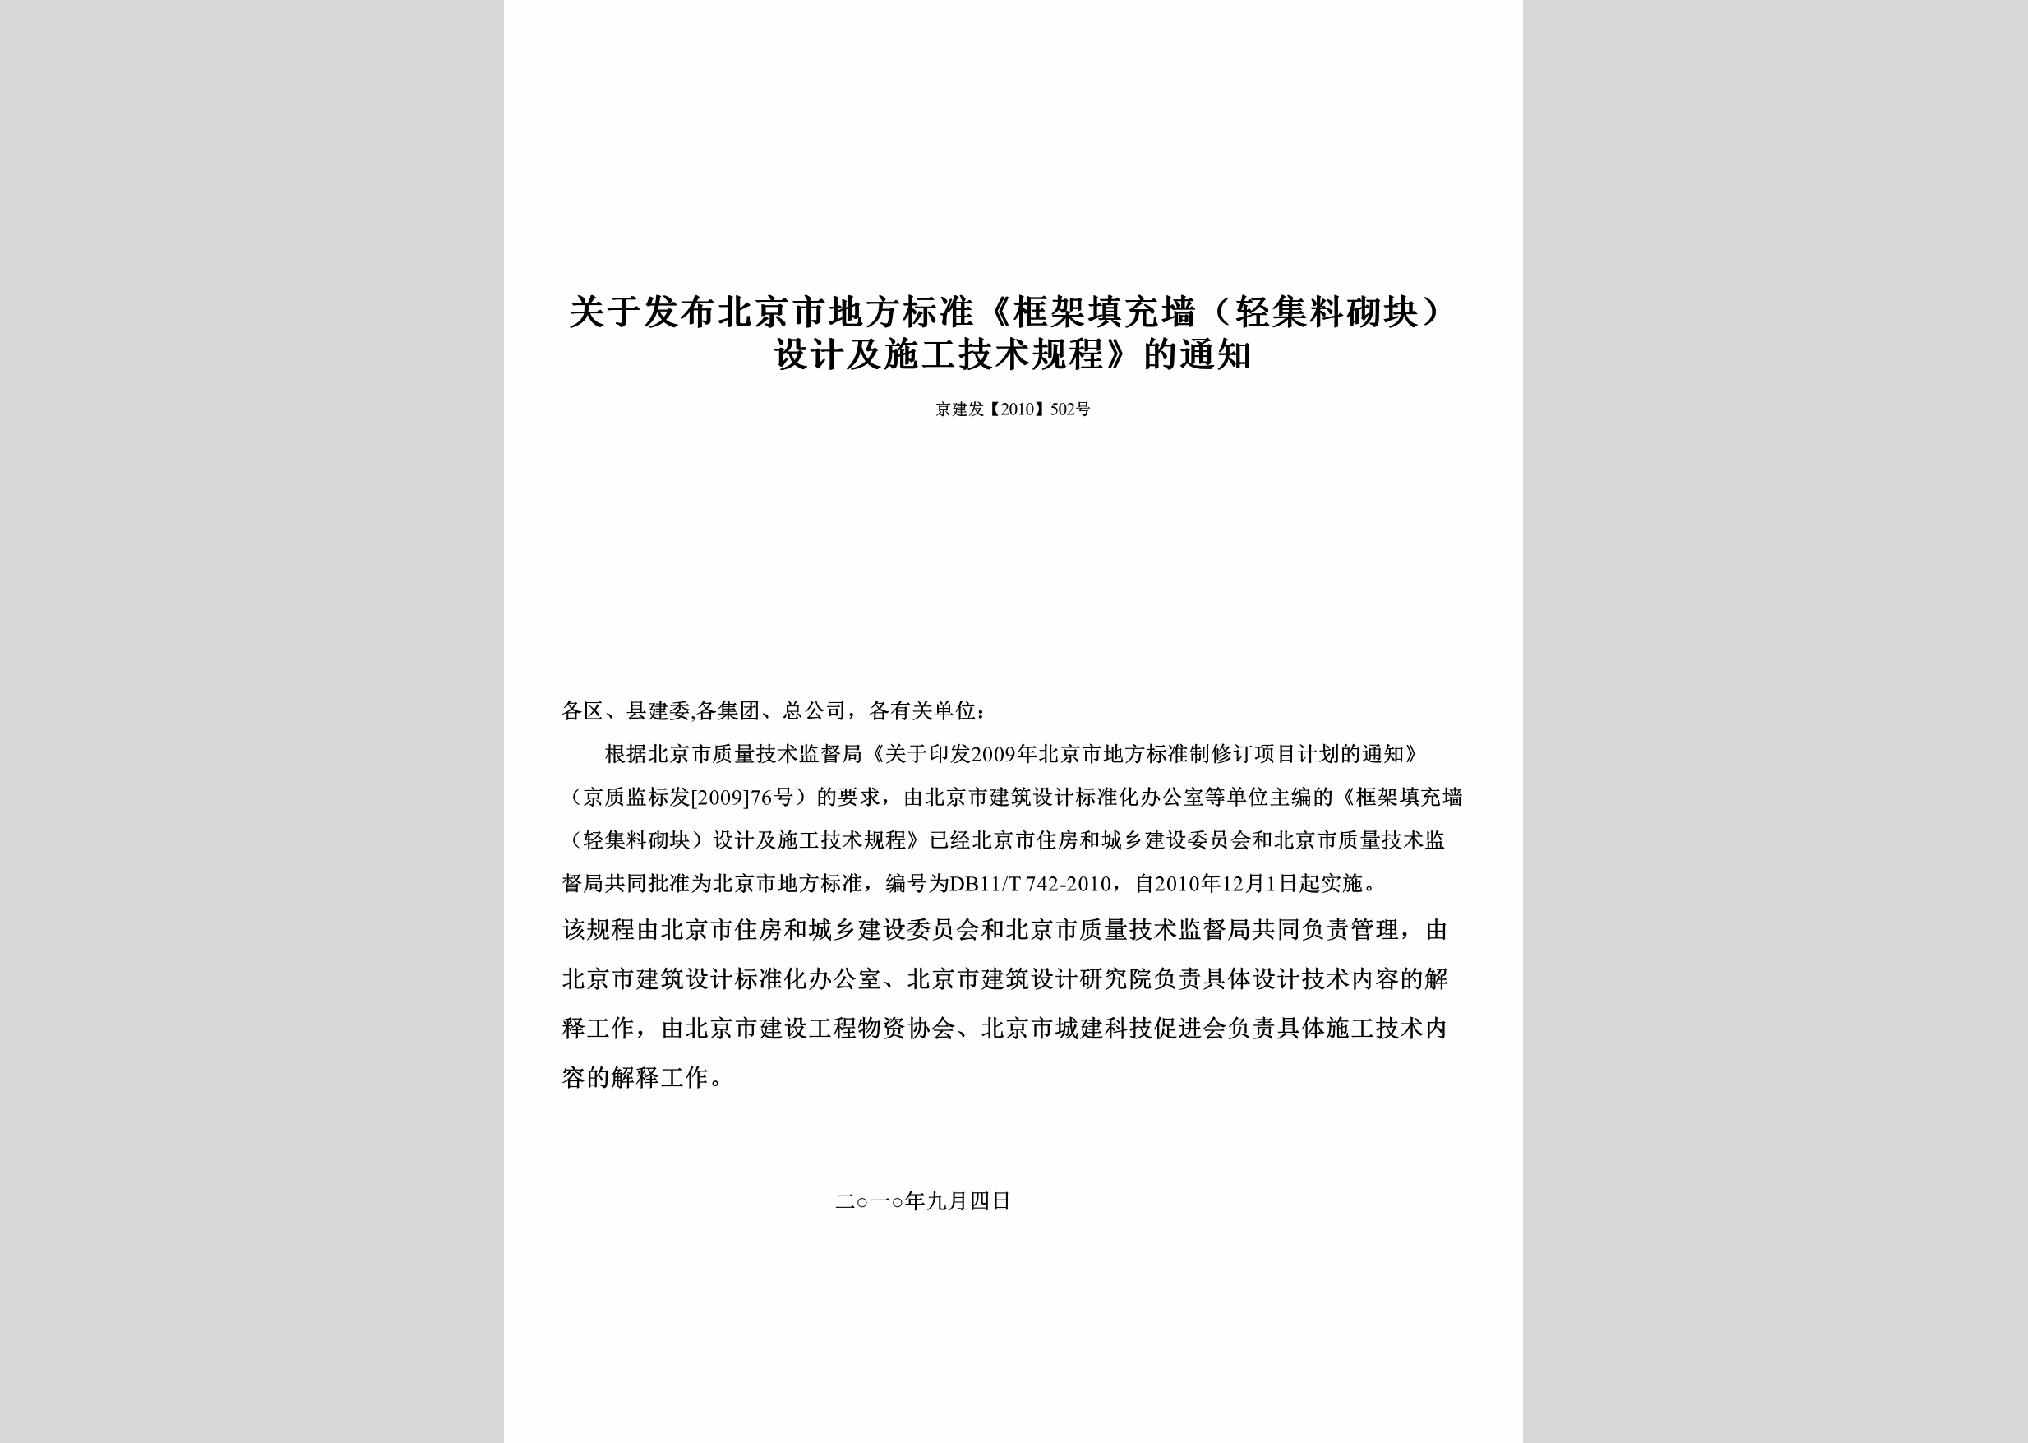 京建发[2010]502号：关于发布北京市地方标准《框架填充墙（轻集料砌块）设计及施工技术规程》的通知